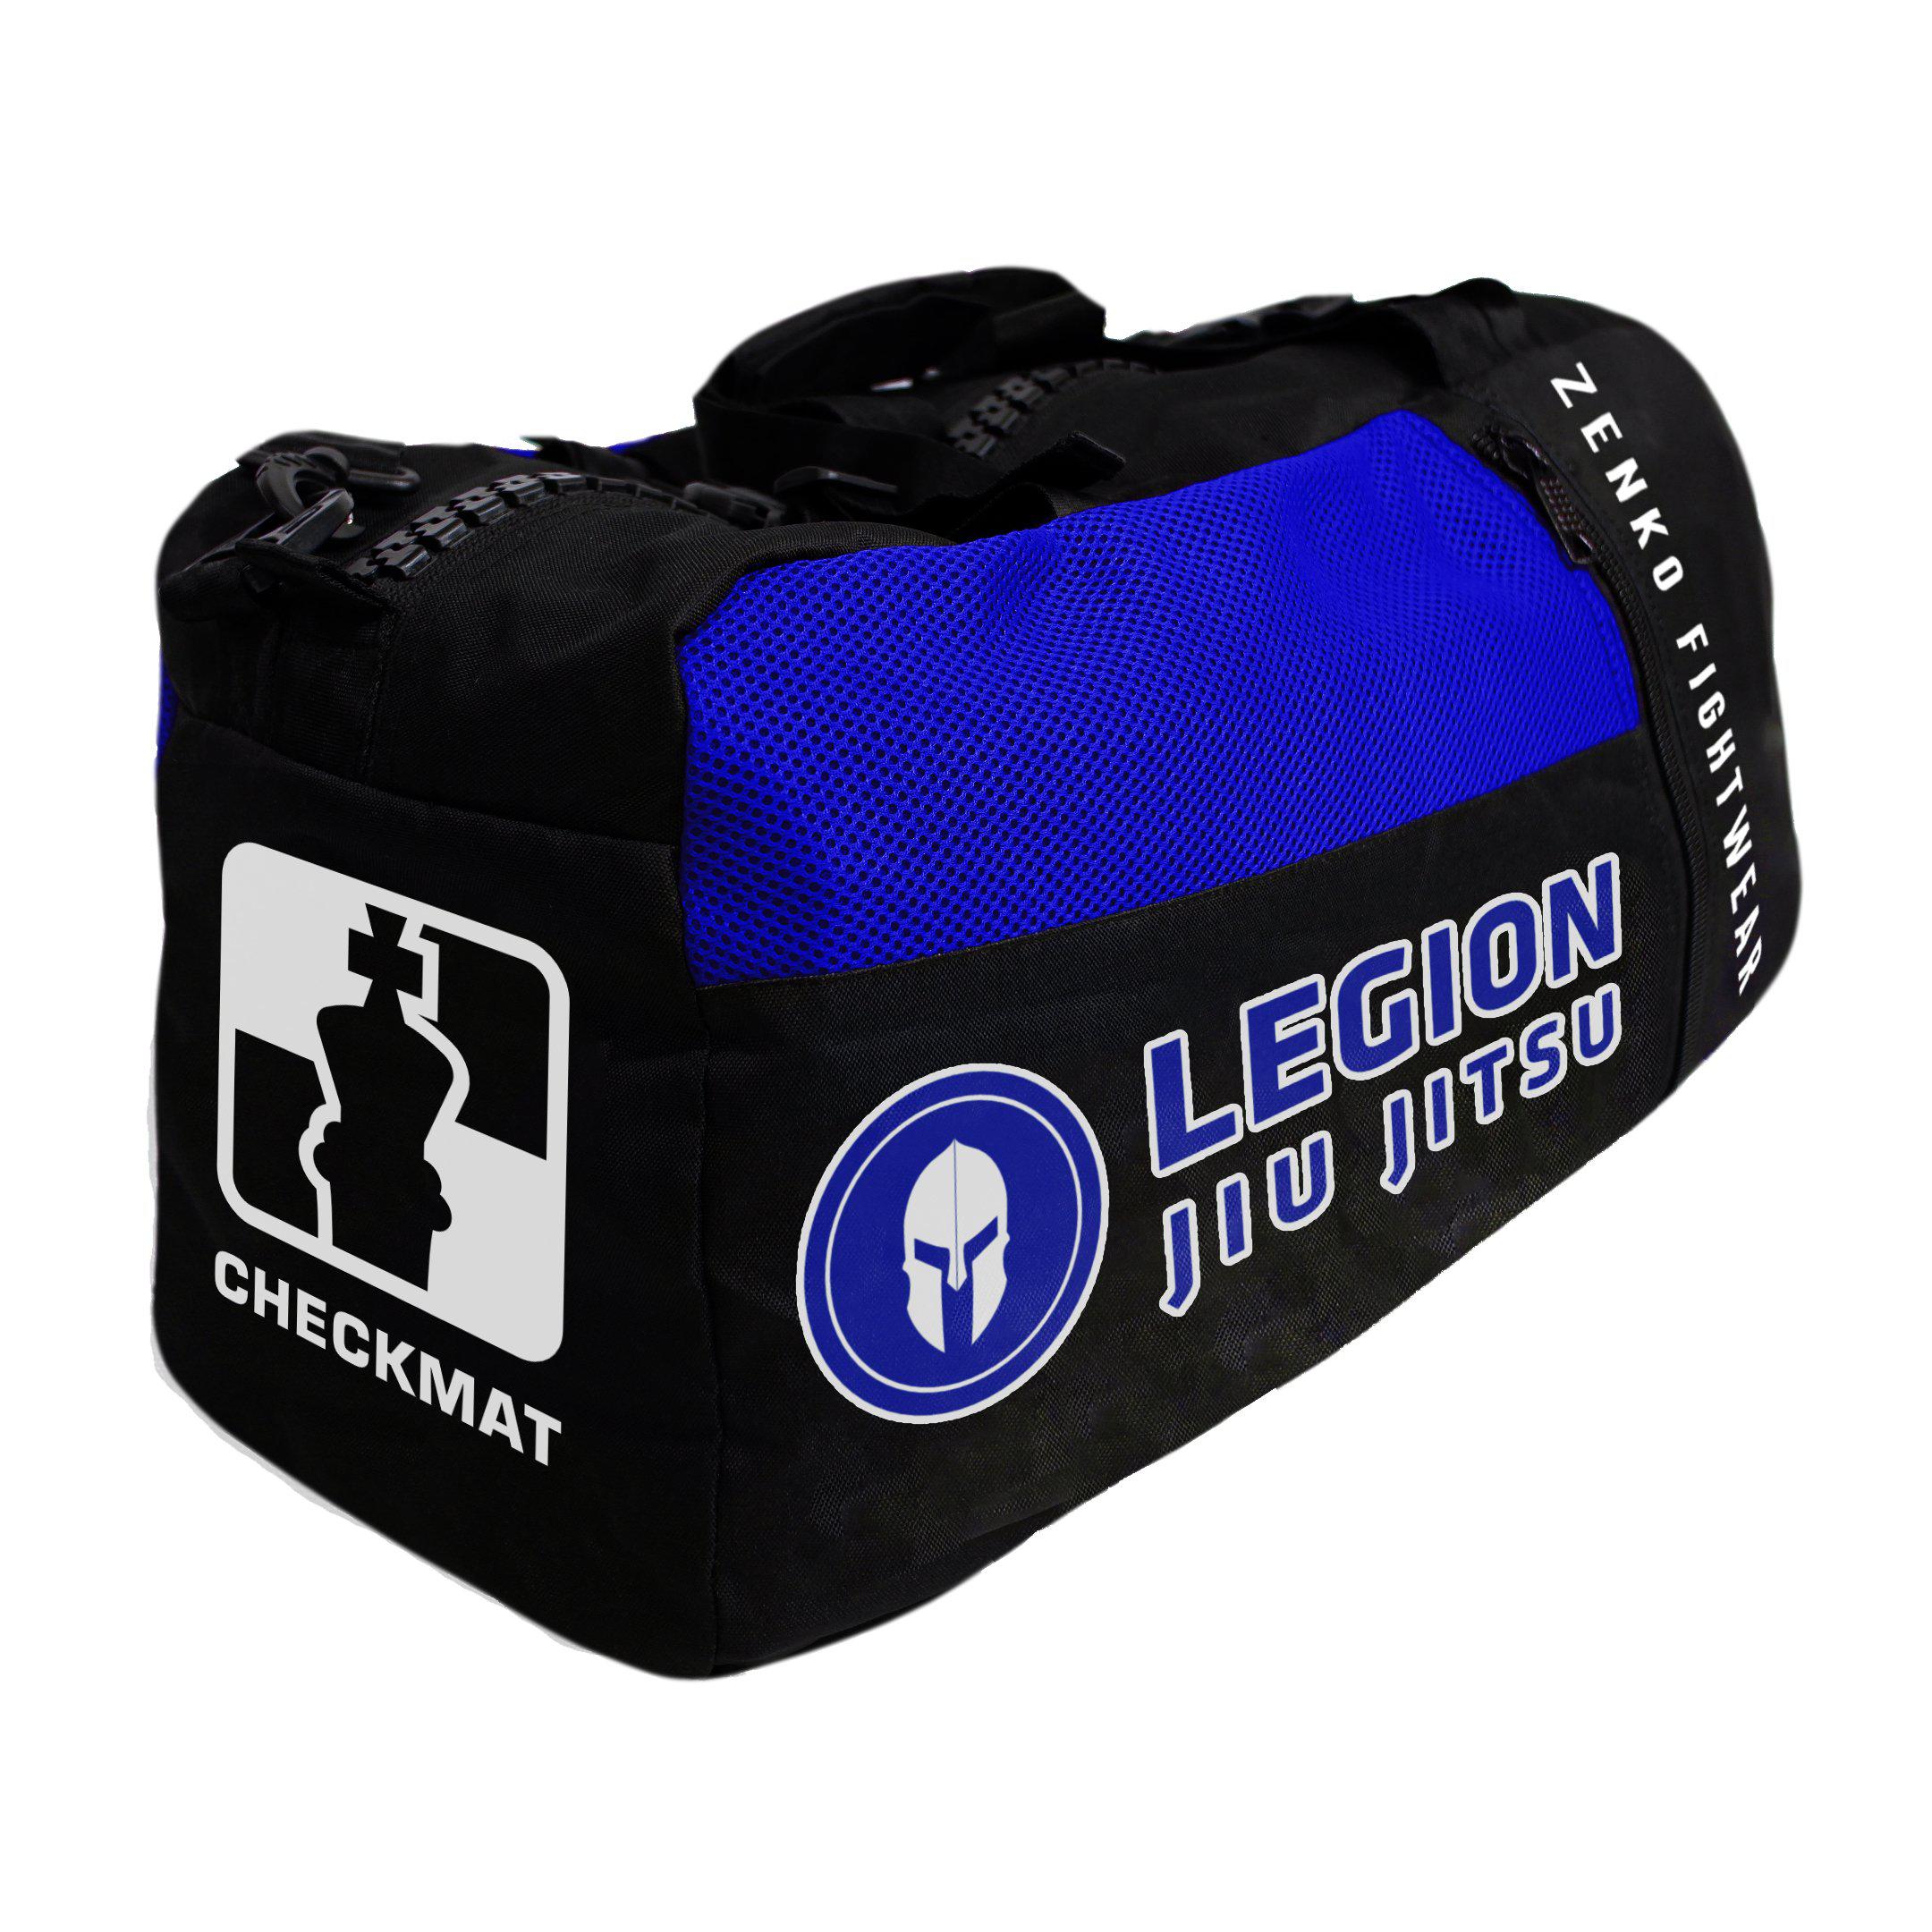 Legion Jiu Jitsu Gear Bag - Zenko Fightwear